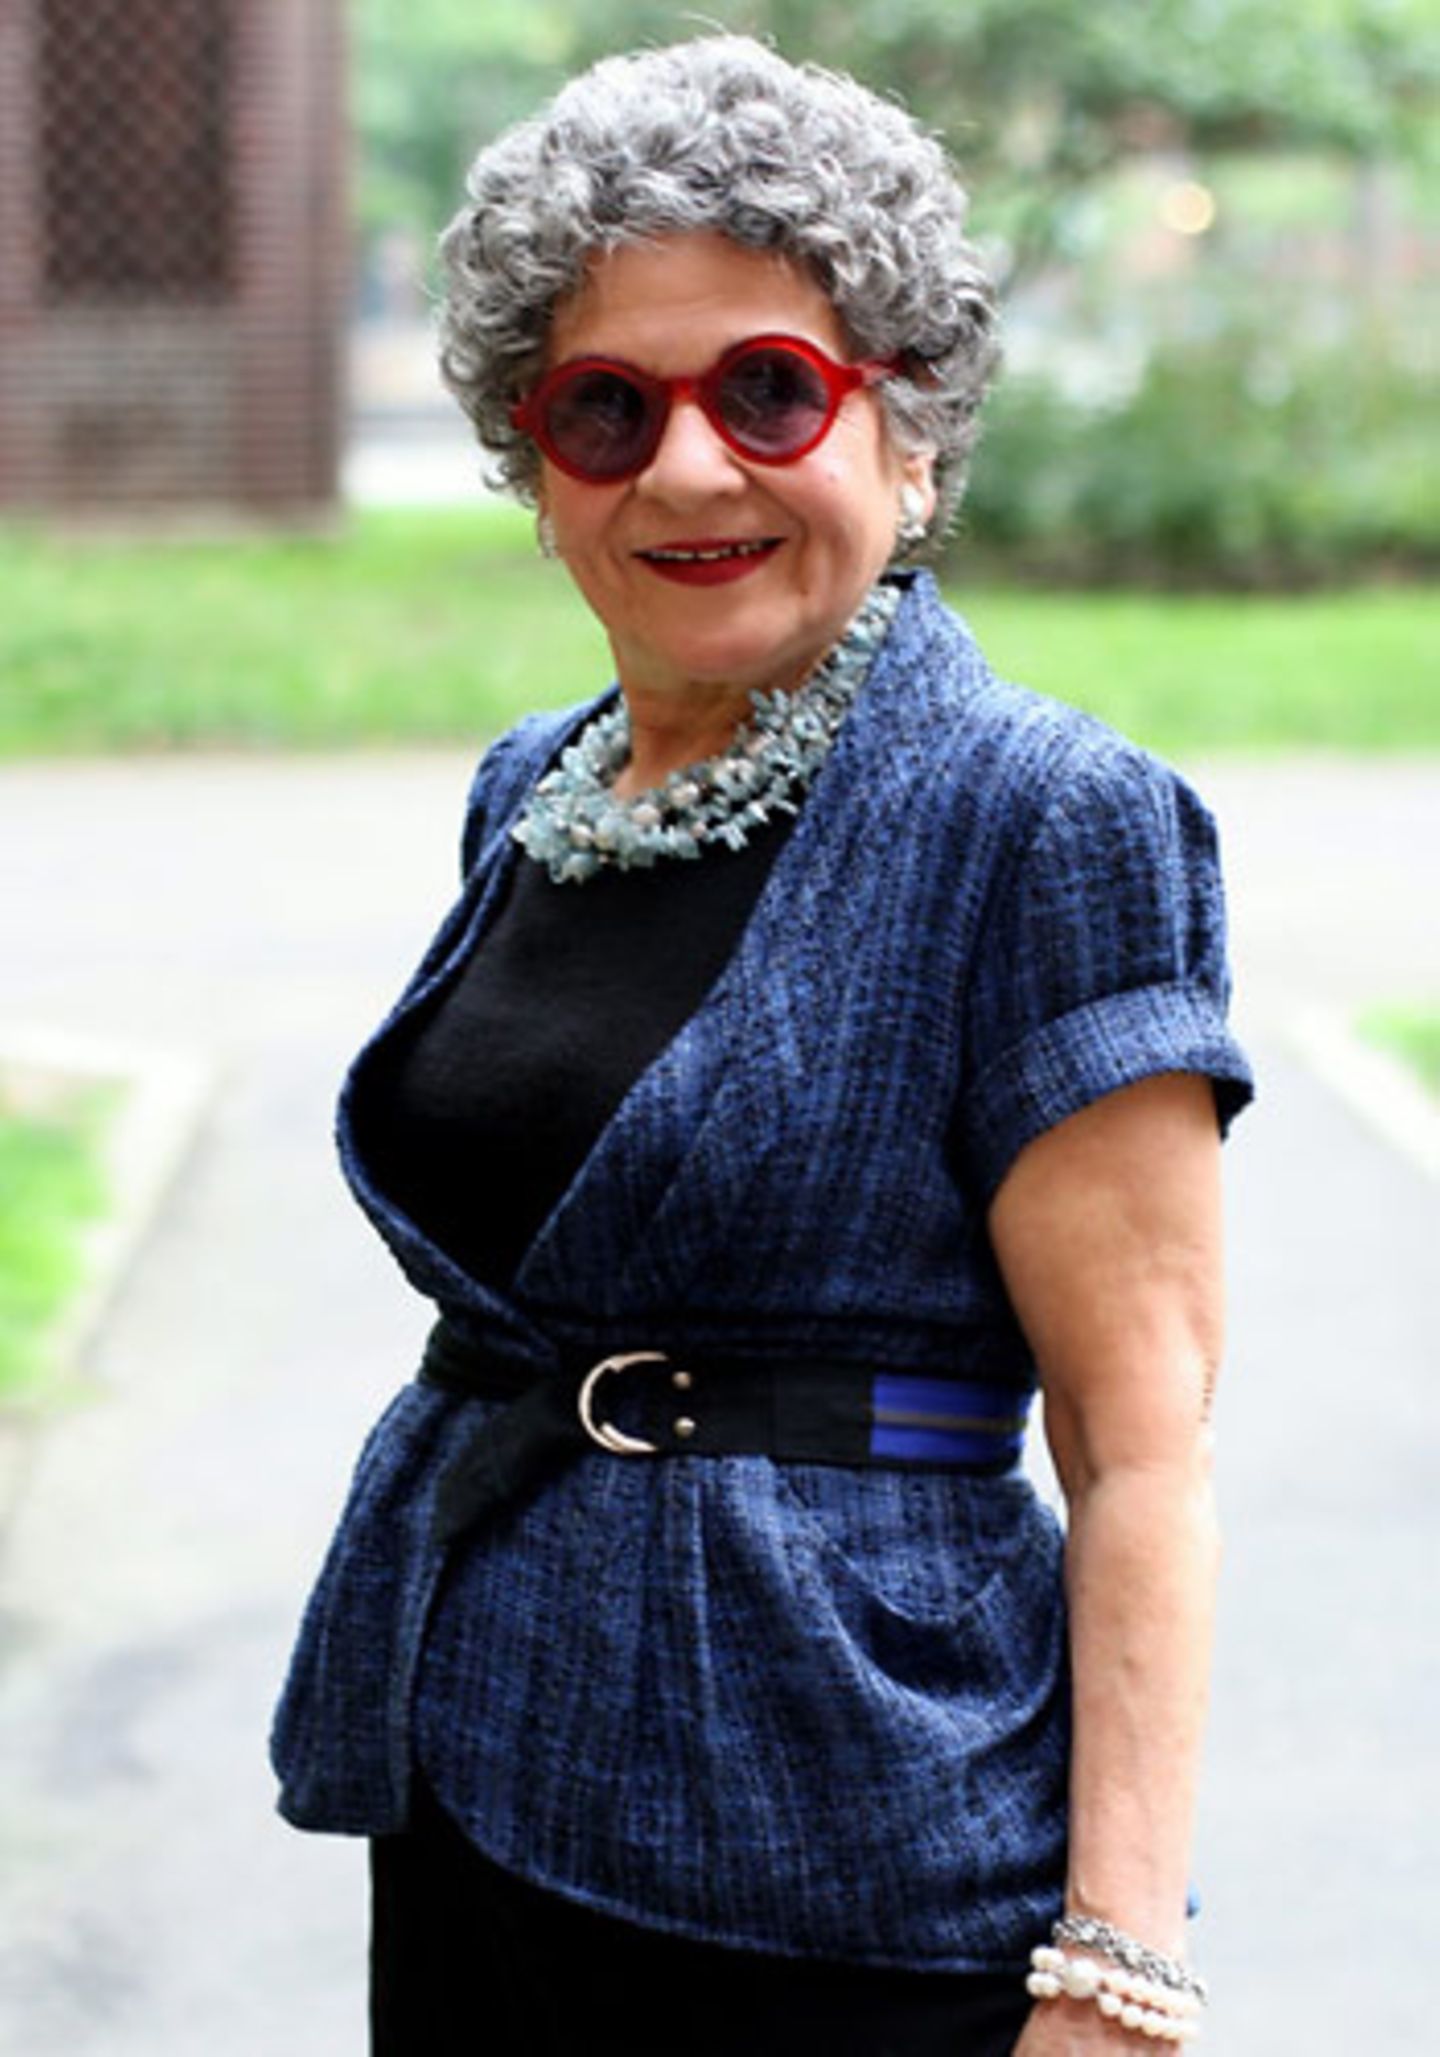 Die 70-jährige Mary ist eine alte Bekannte. Ari Seth Cohen hat sie schon im New Yorker East Village fotografiert. Jedes Mal aufs Neue kann er sich für ihre hervorragende Accessoire-Auswahl begeistern. Zum blauen Jäckchen trägt Mary eine kreisrunde rote Sonnenbrille. Mode ist für sie eine Form des persönlichen Ausdrucks. Deswegen gibt sie auch keine Mode-Tipps. Nur so viel verrät sie: Wenn es oben bunt und wuselig zugeht, sollte man unten schlichte und einfarbige Teile tragen.